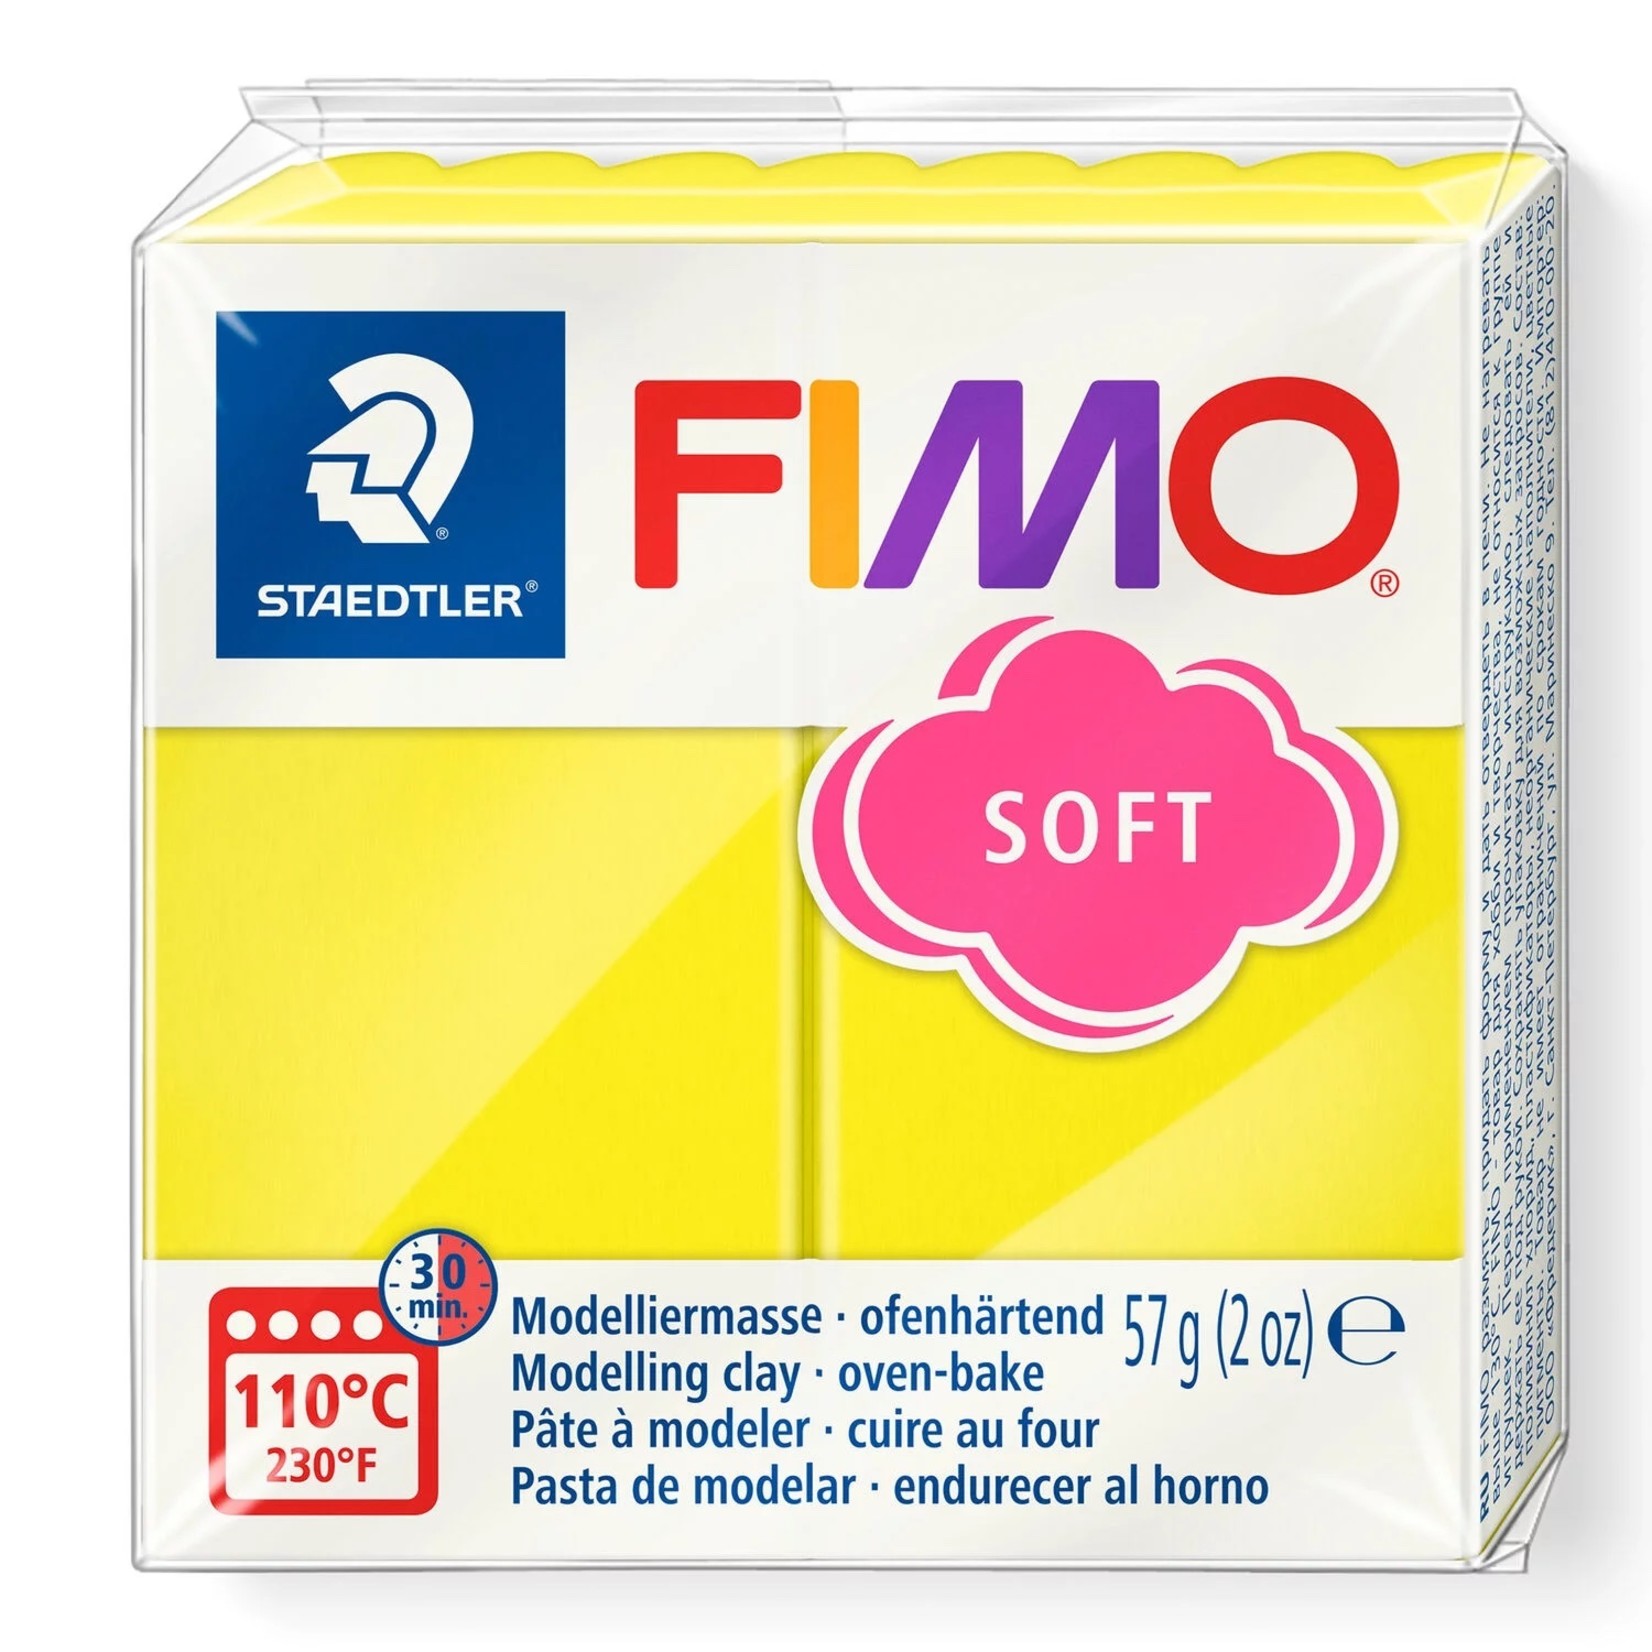 STAEDTLER FIMO SOFT 10 LEMON